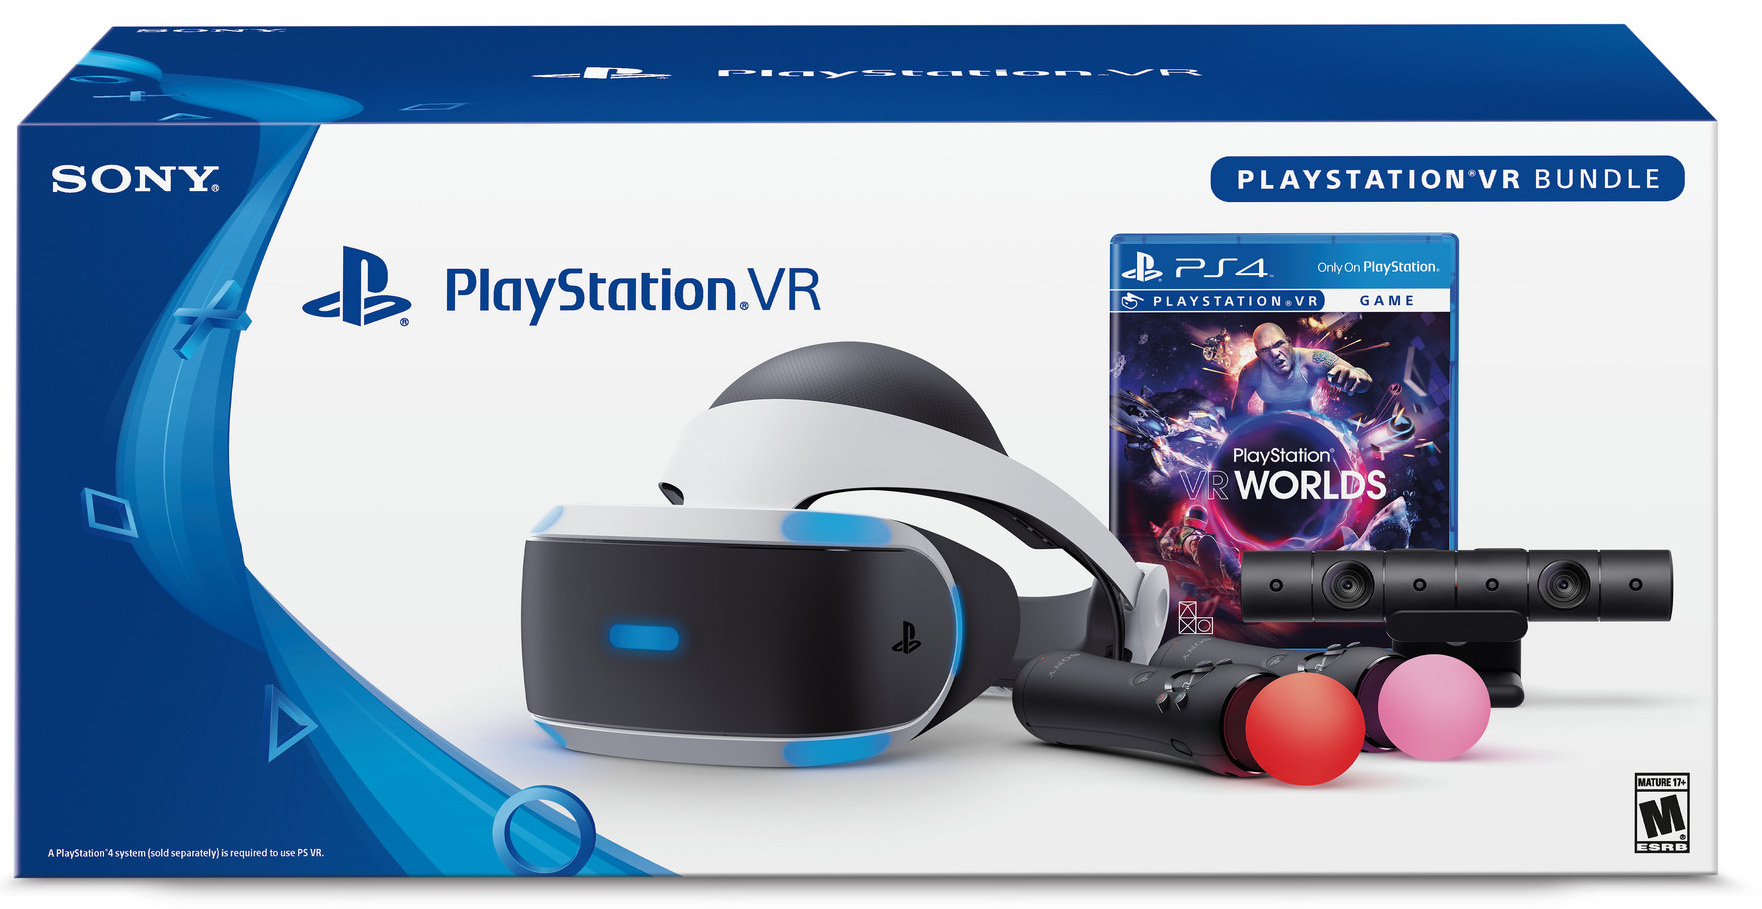 PS4 Pro e PS VR chegarão ao Brasil com bundle de hardware completo.